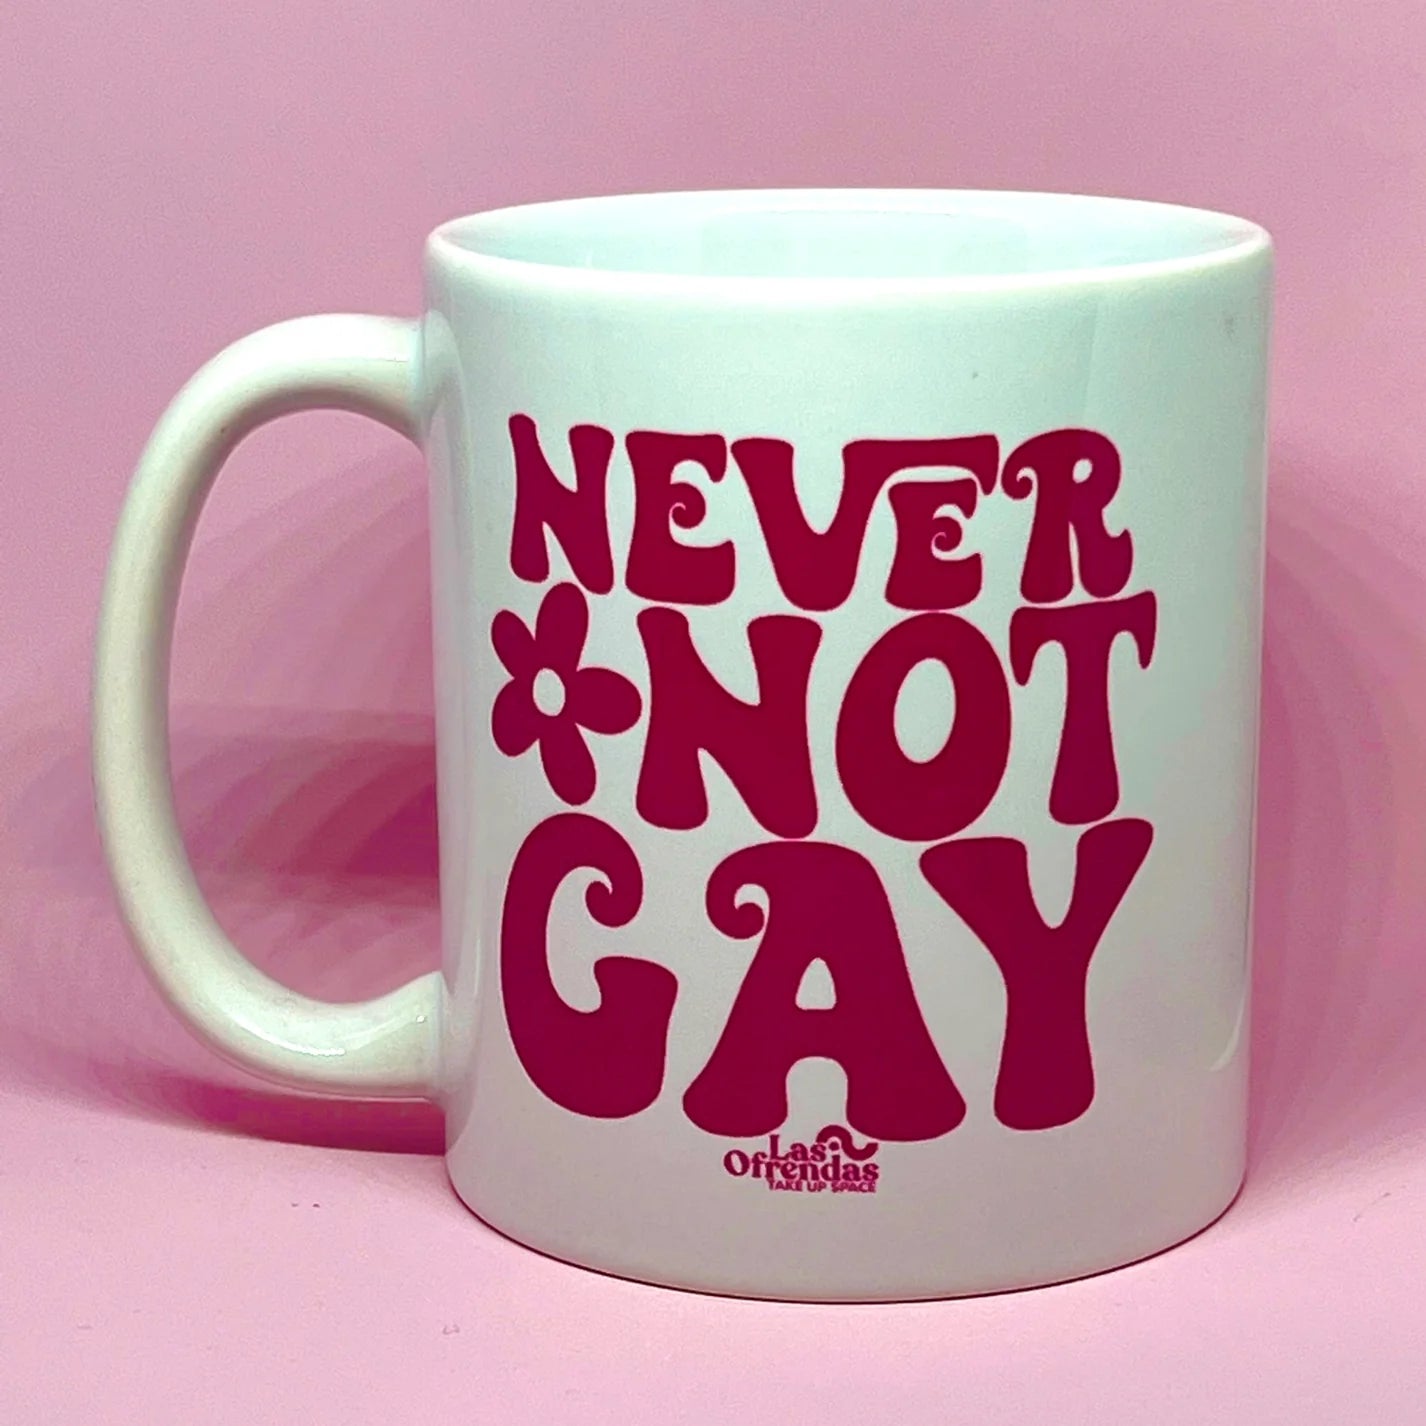 Never not gay coffee or tea mug